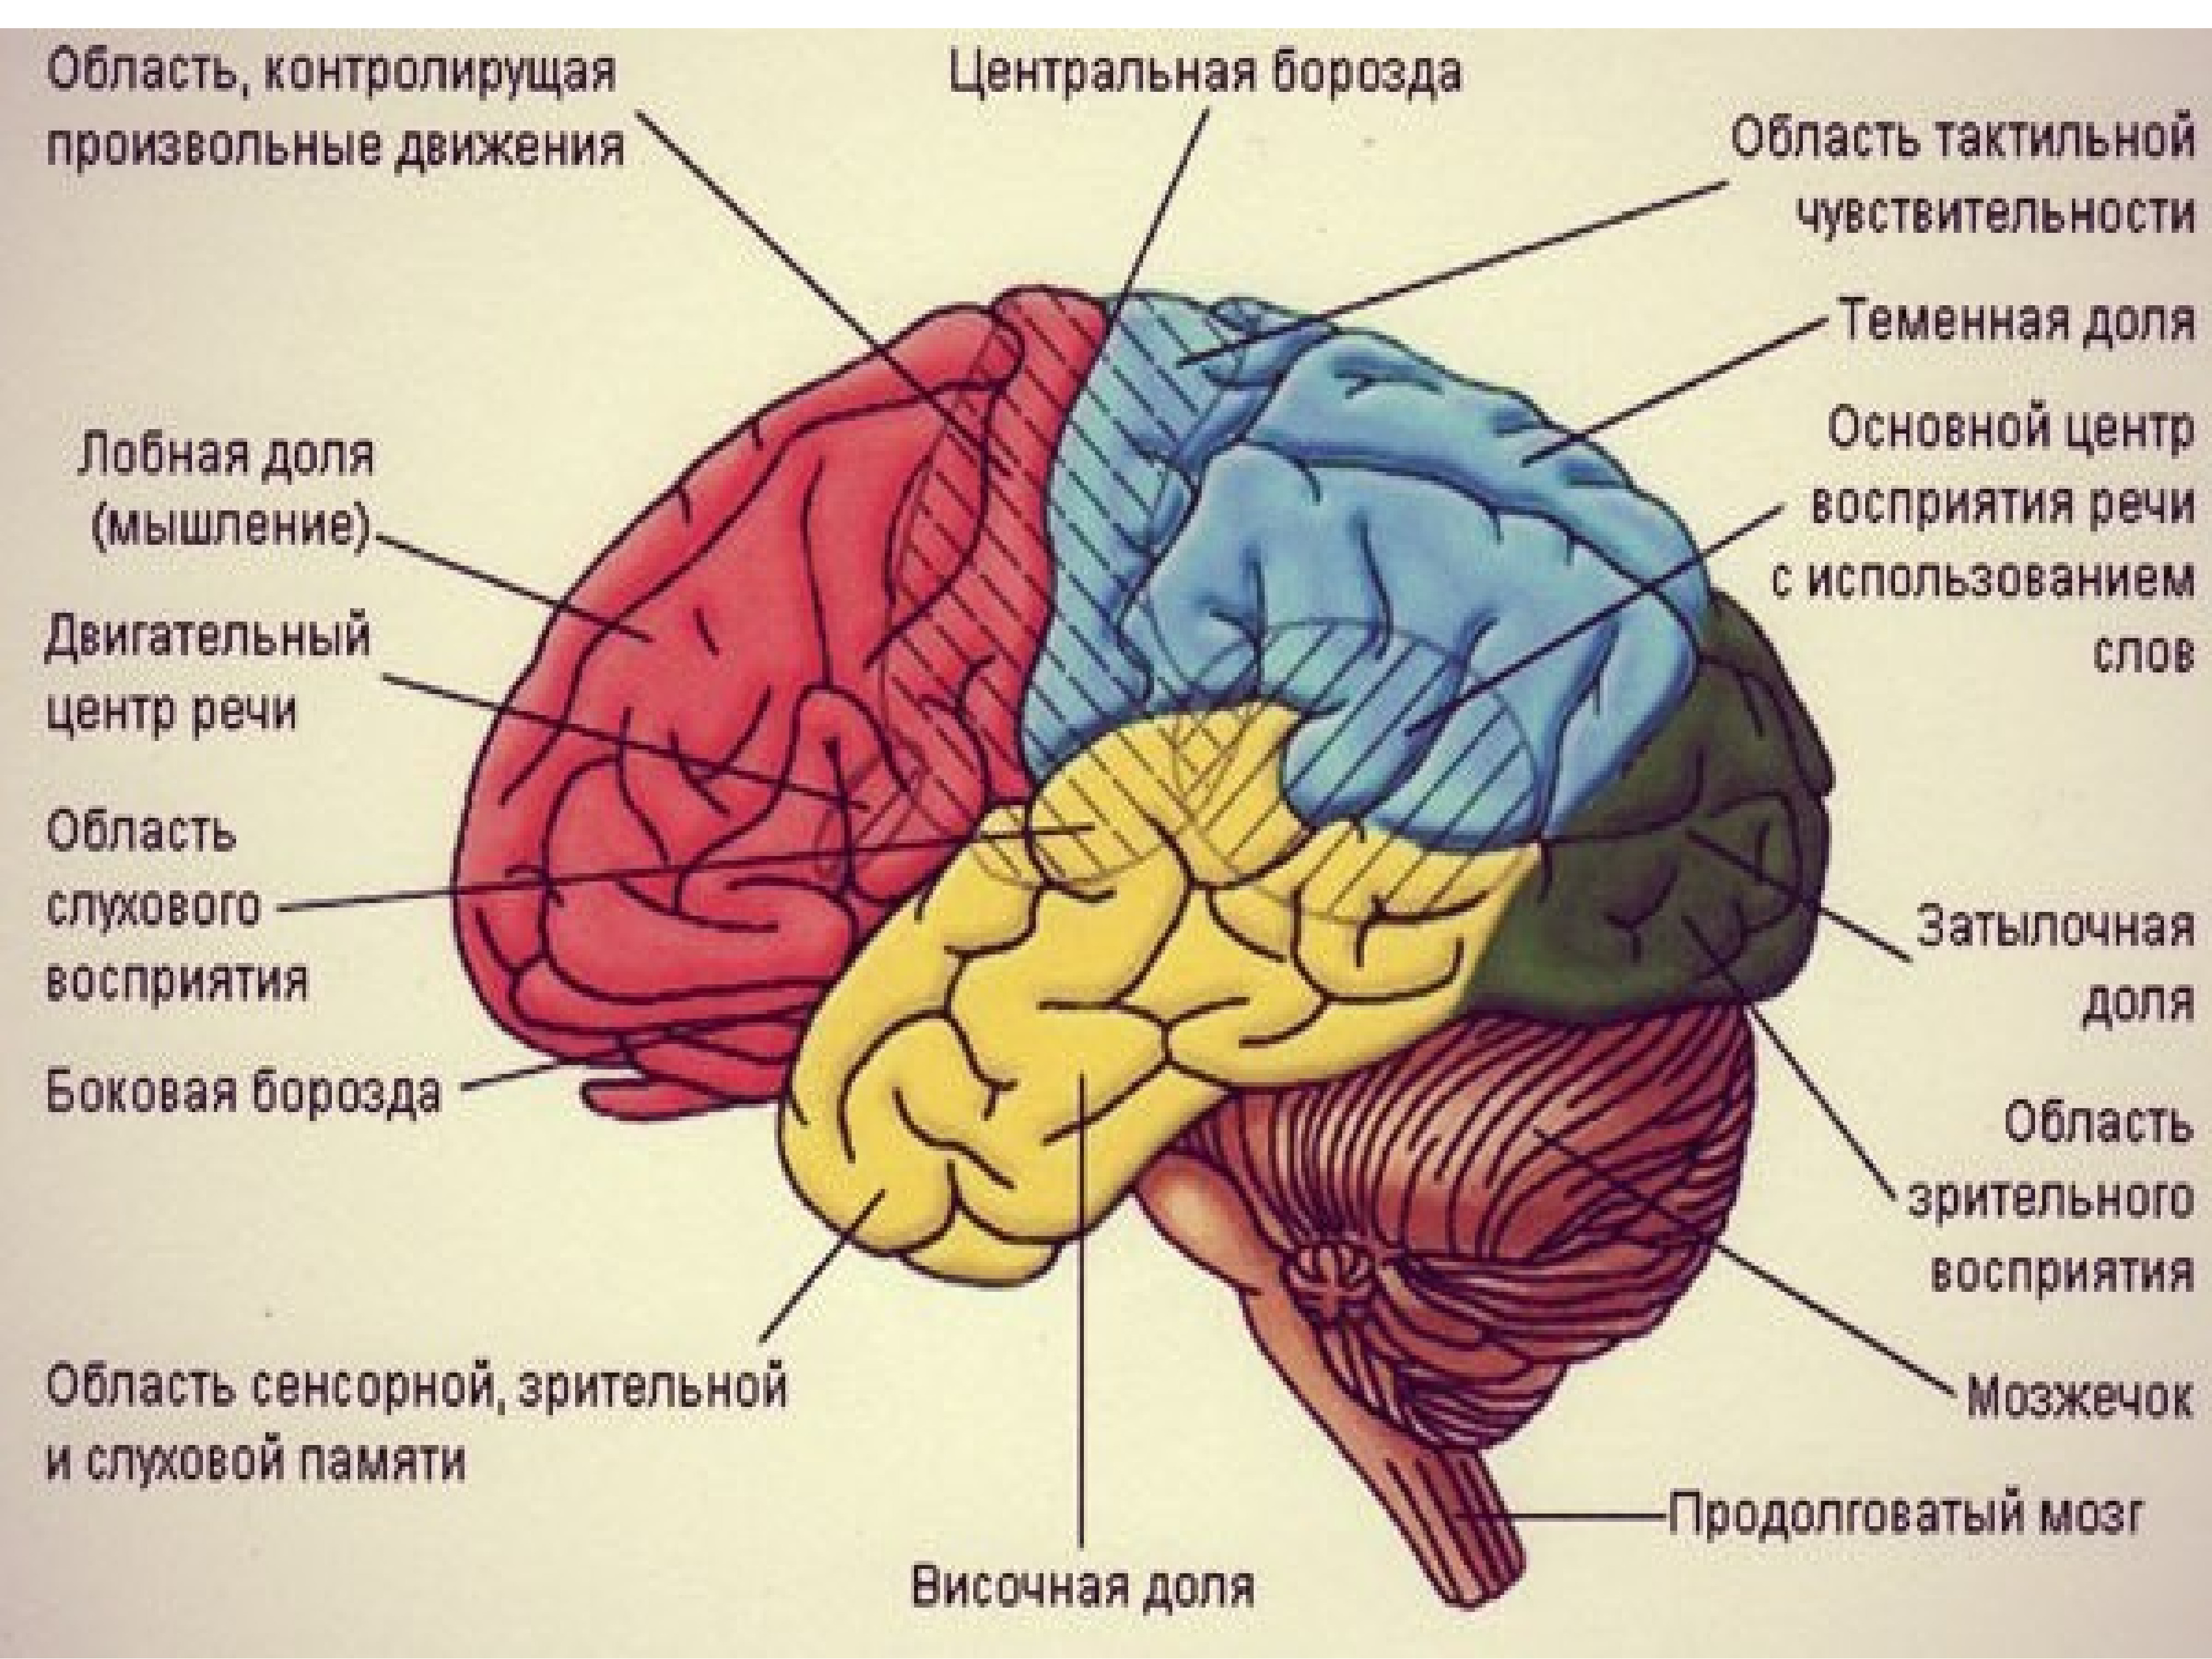 Теменная зона коры мозга. Ассоциативные зоны головного мозга. Ассоциативные области коры больших полушарий. Центры долей мозга. Ассоциативные области коры большого мозга..